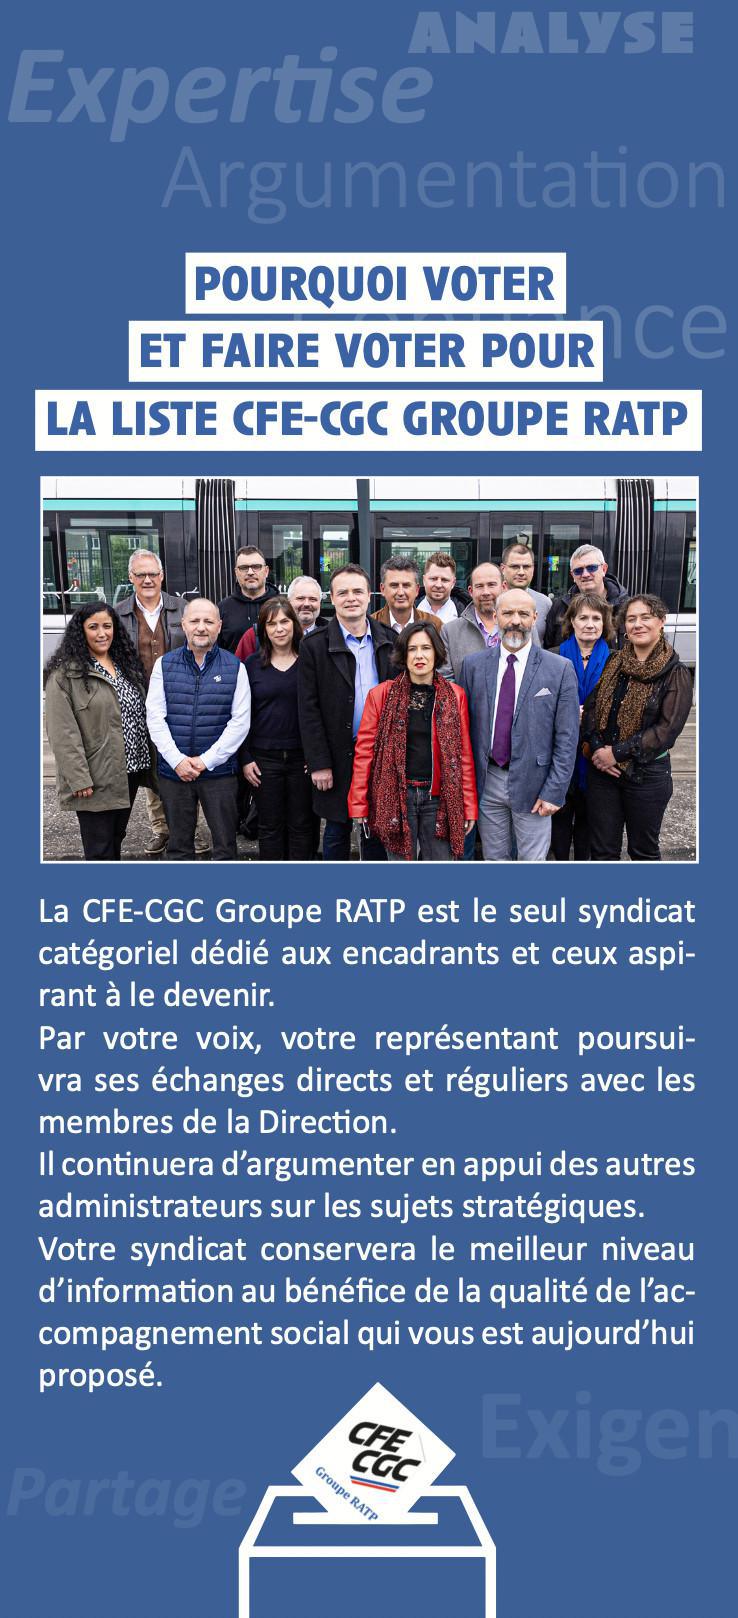 Pourquoi voter et faire voter pour la liste CFE-CGC Groupe RATP